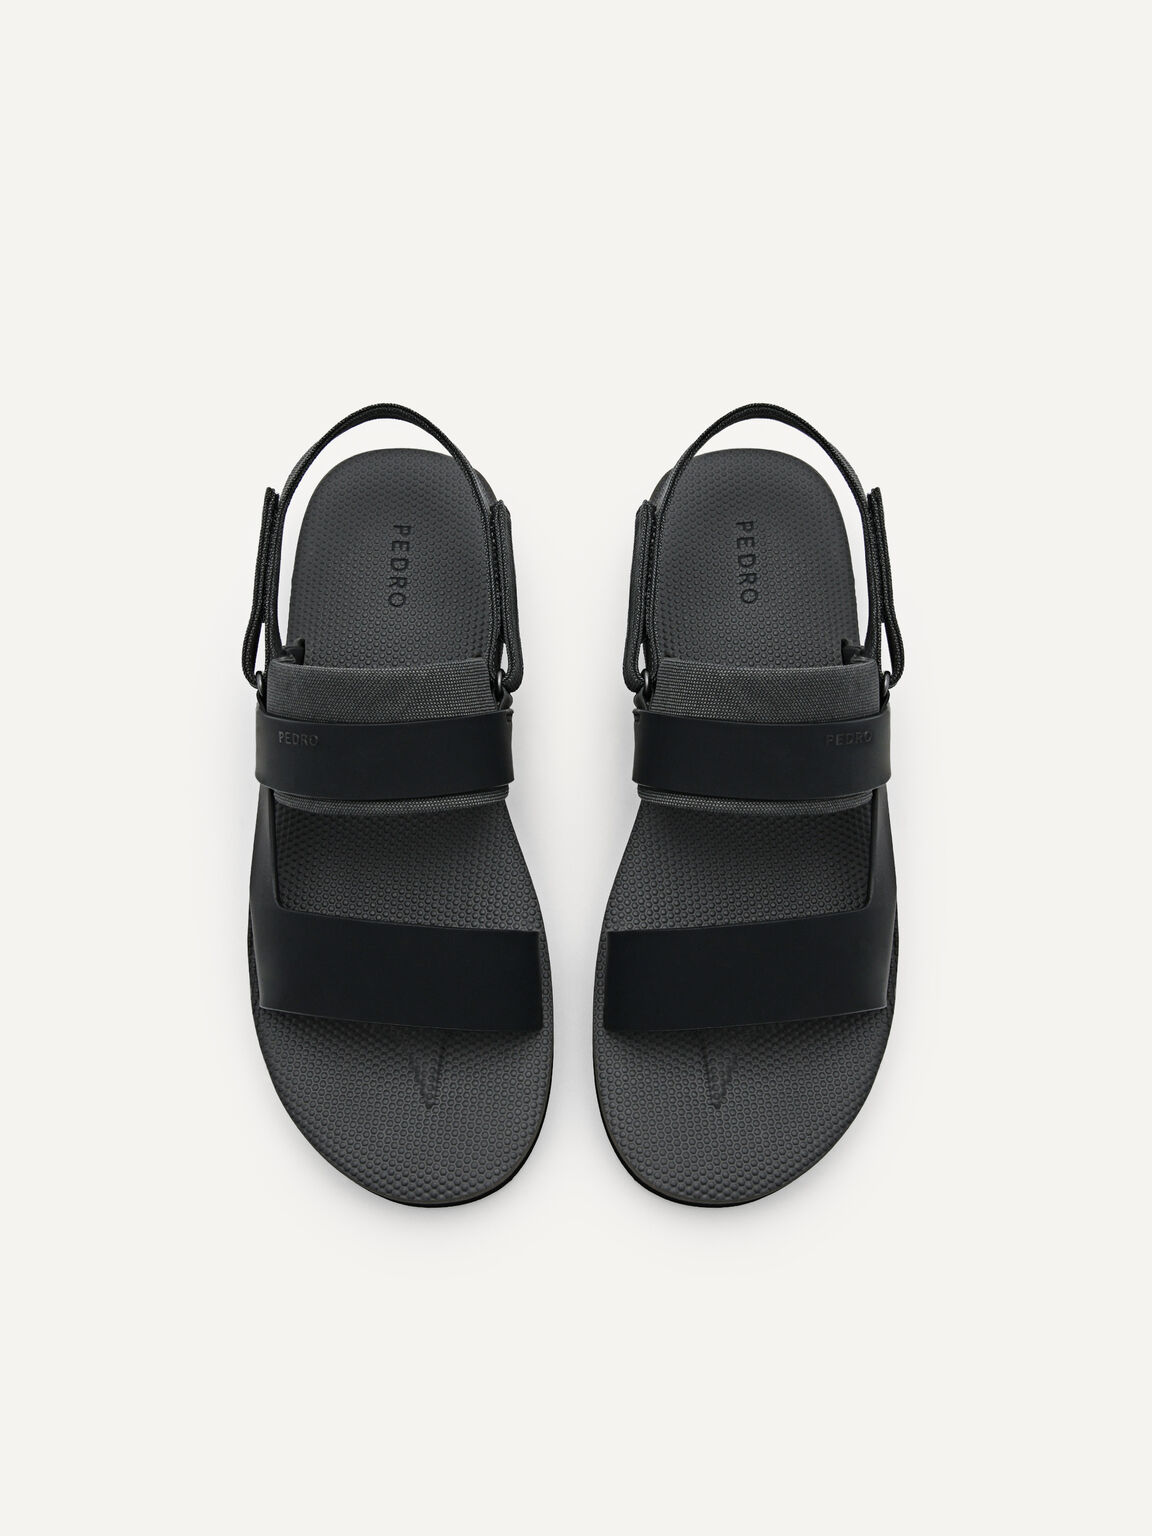 Backstrap Sandals, Black